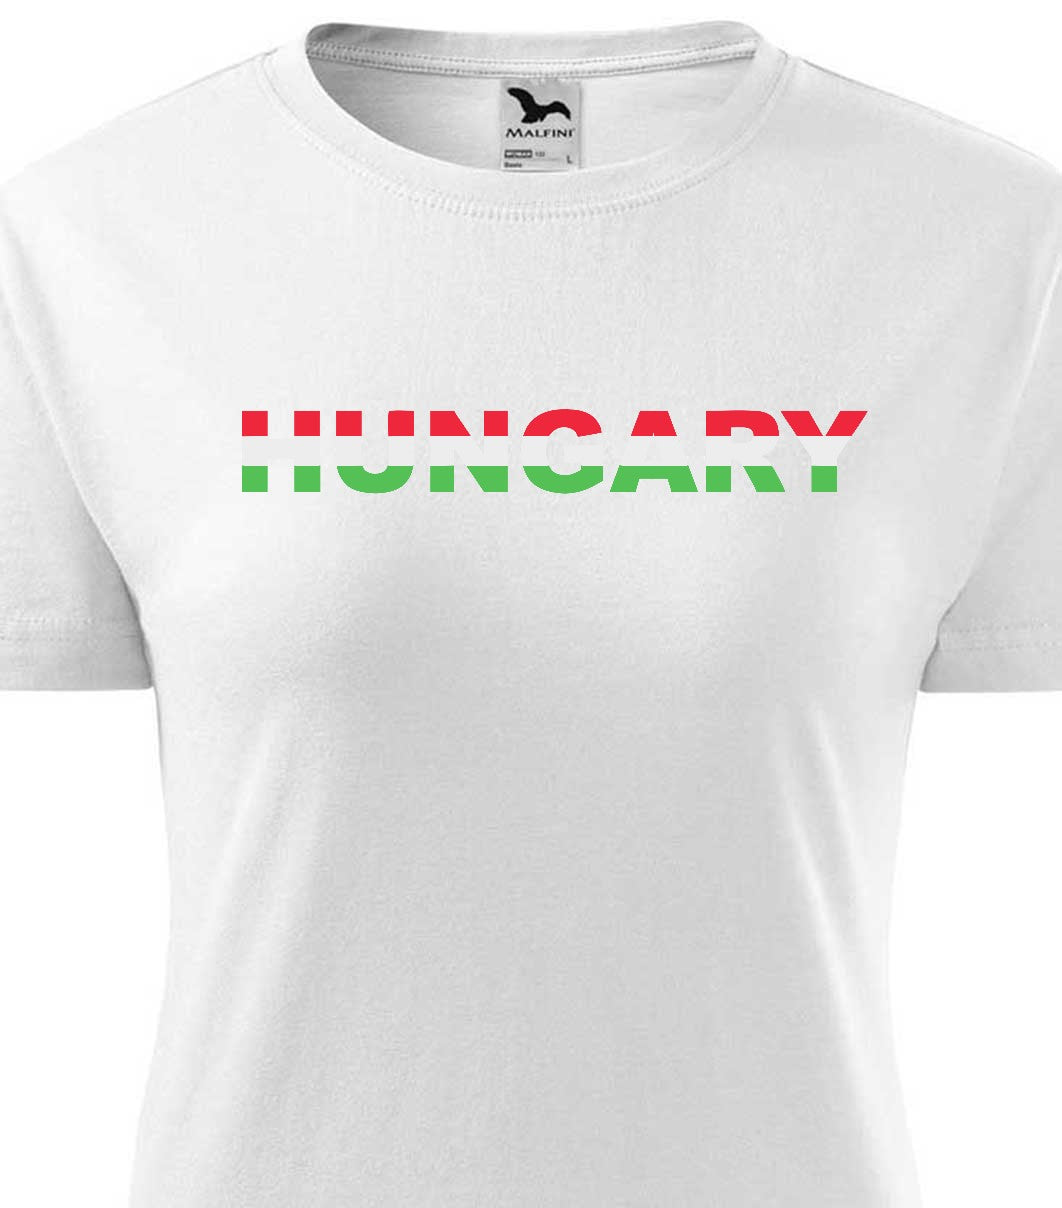 Magyarország 2 női póló